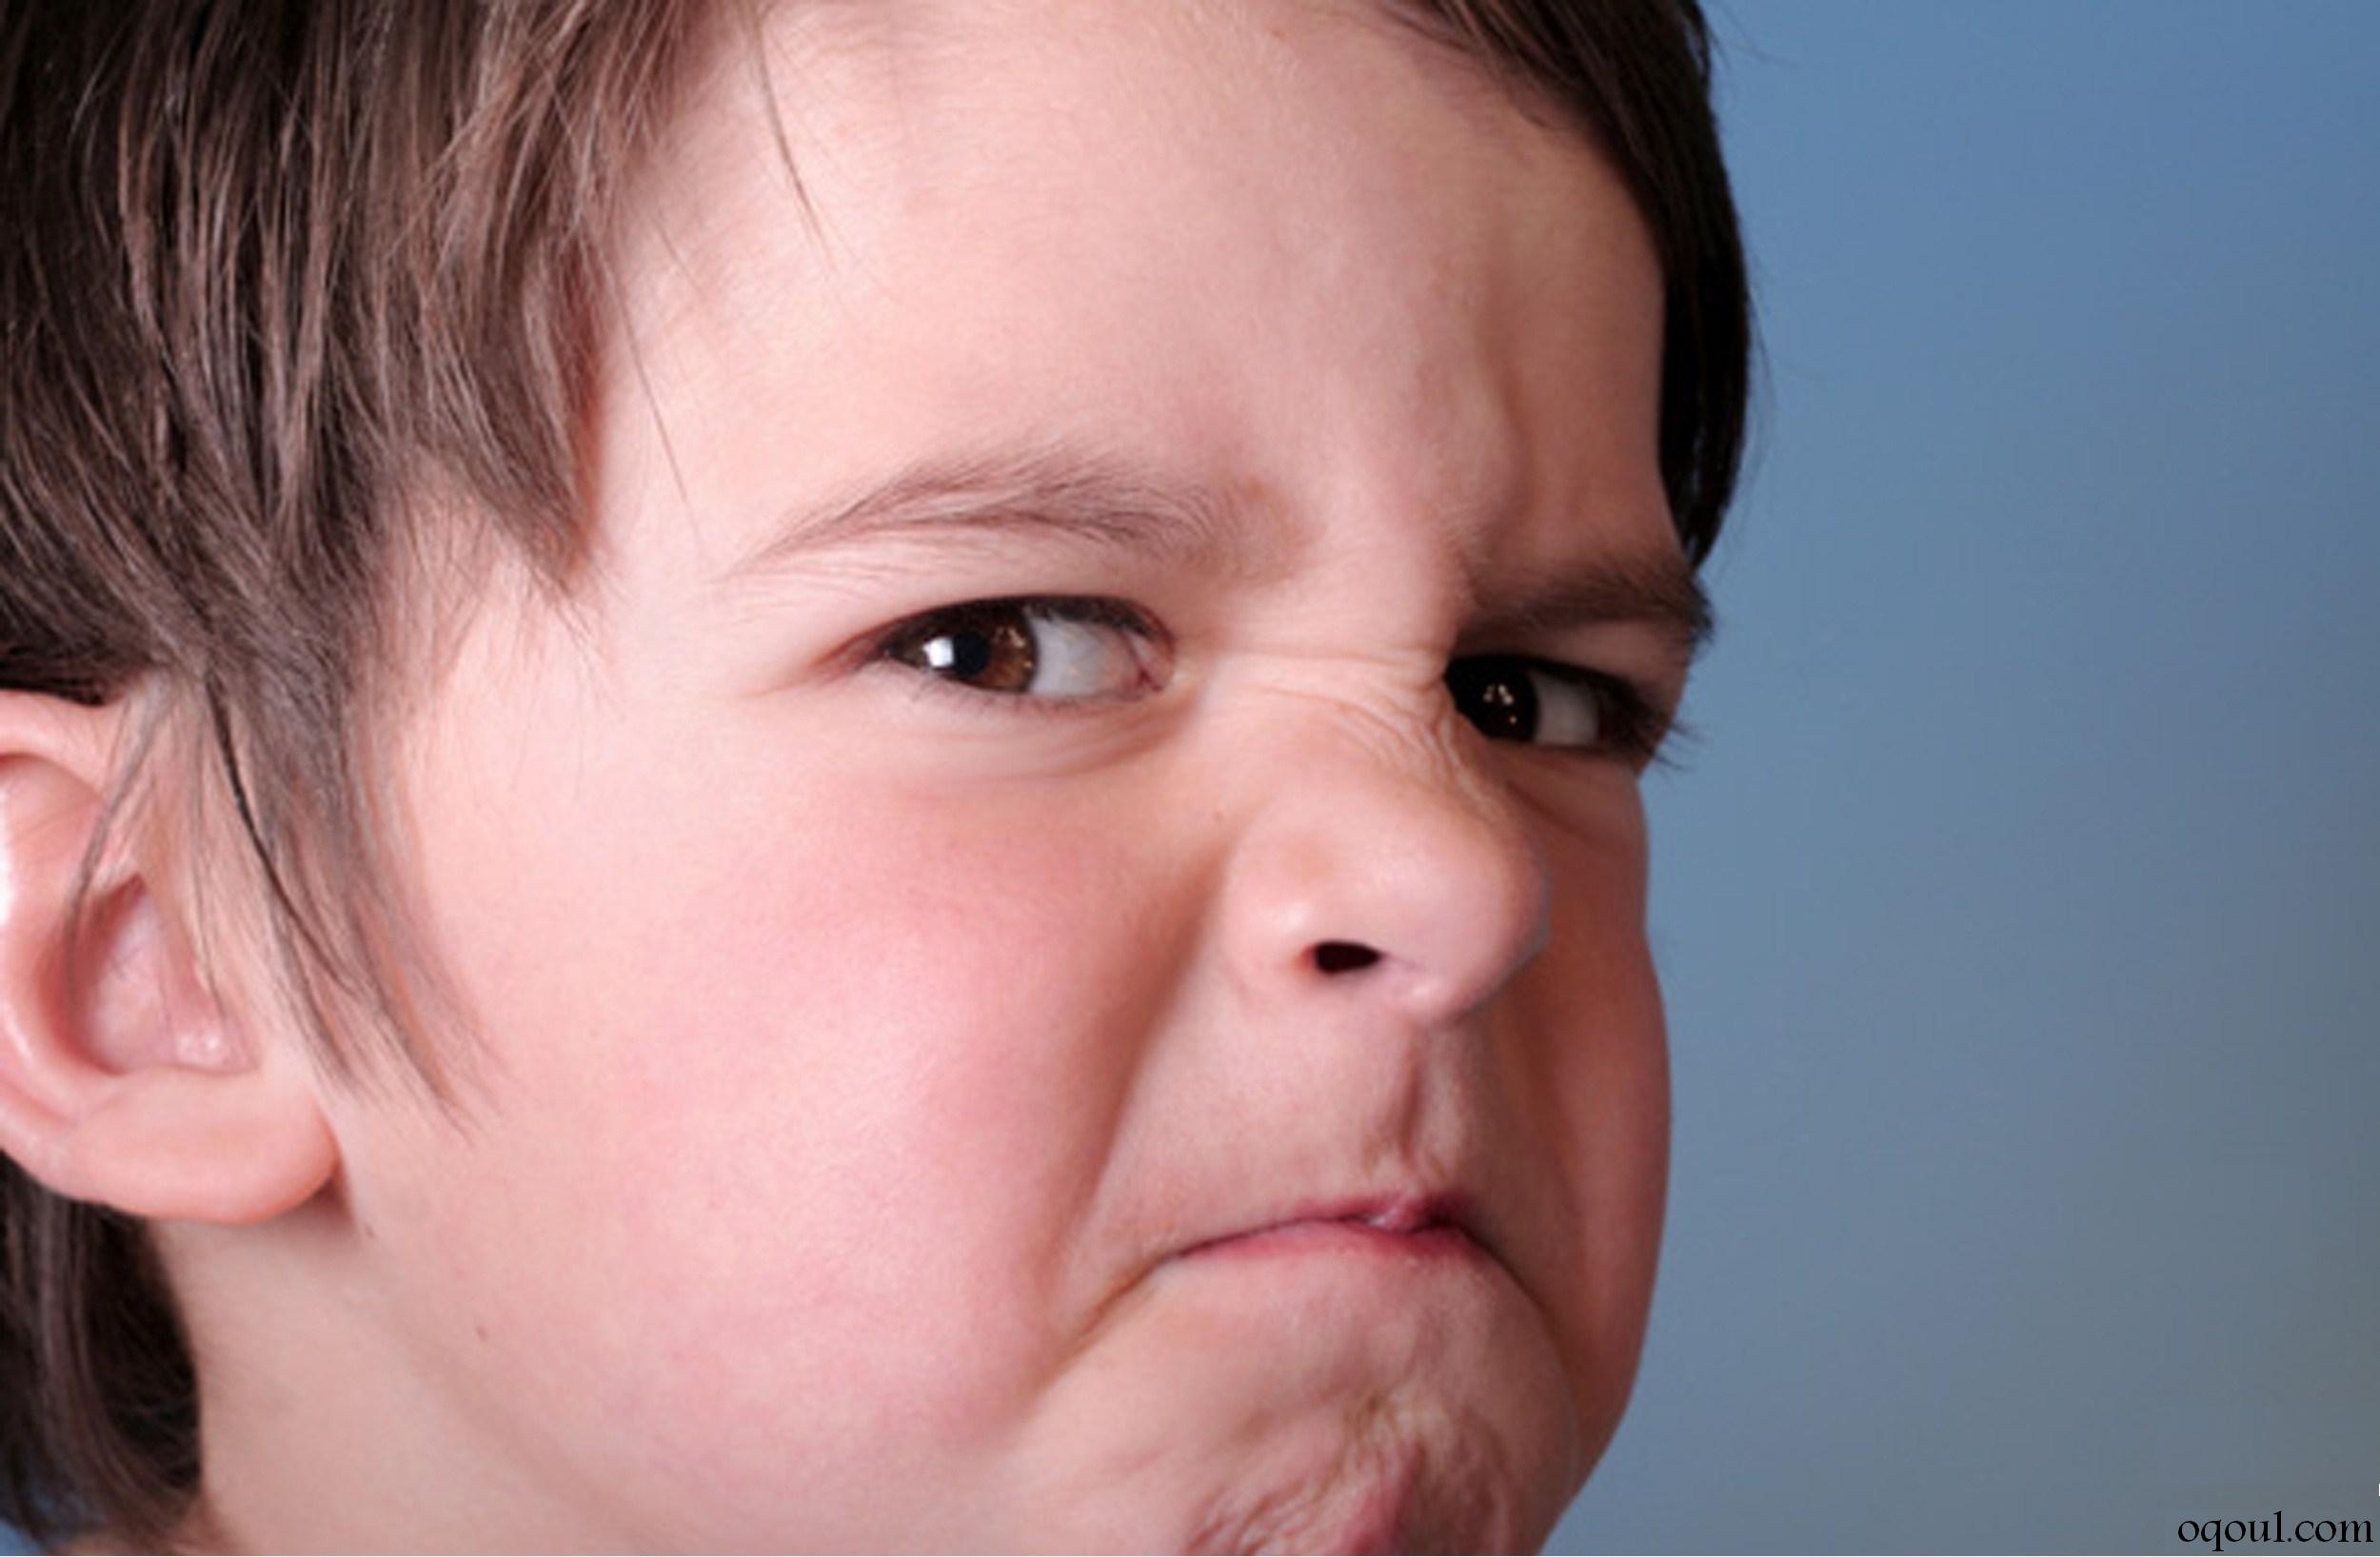 كيفية تتعاملين مع الطفل العصبي و نوبات الغضب لدى الطفل..؟